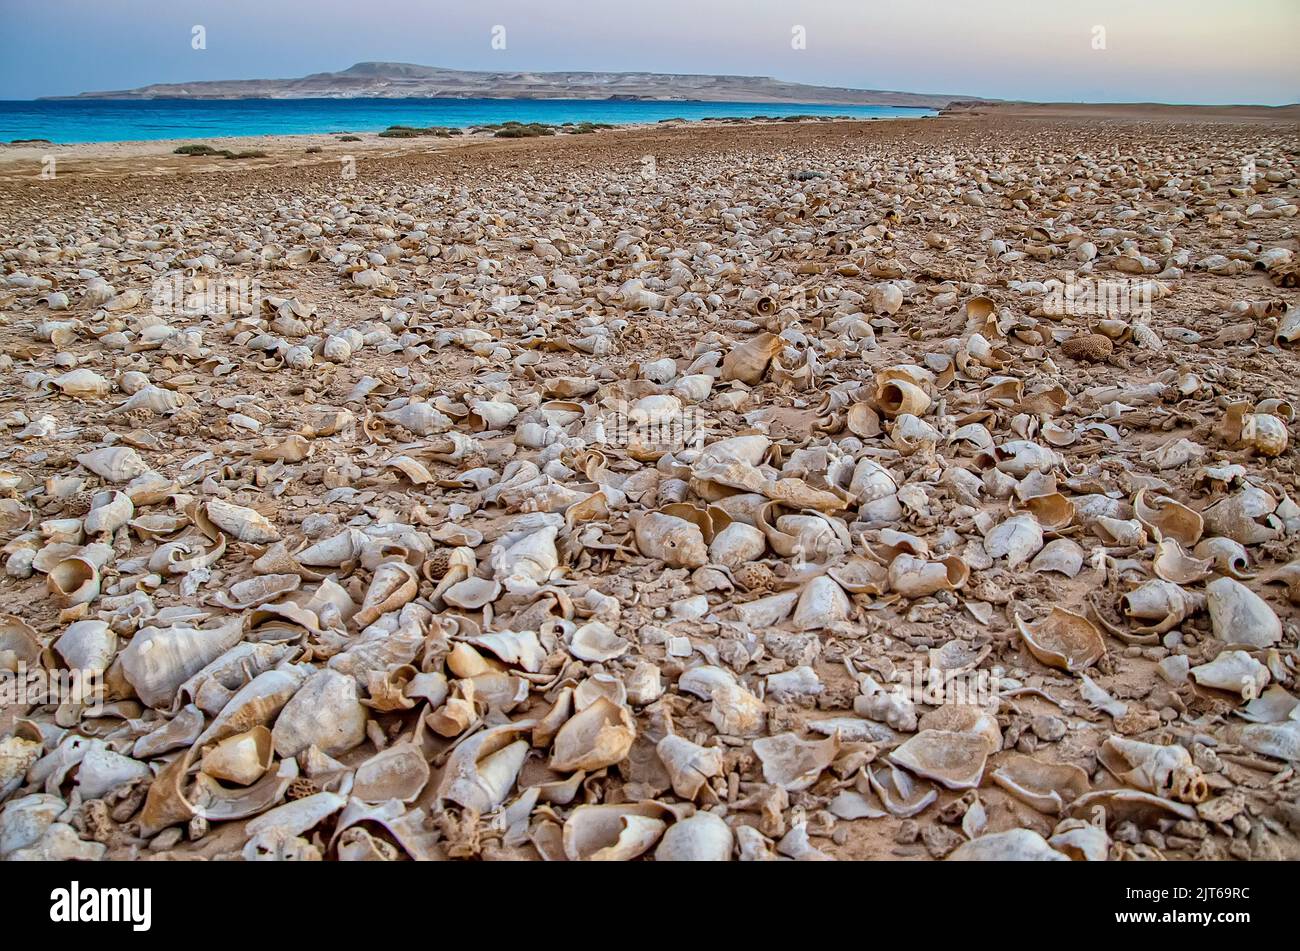 An der Küste einer einsamen Insel, die mit Tausenden von Muscheln bedeckt ist Stockfoto